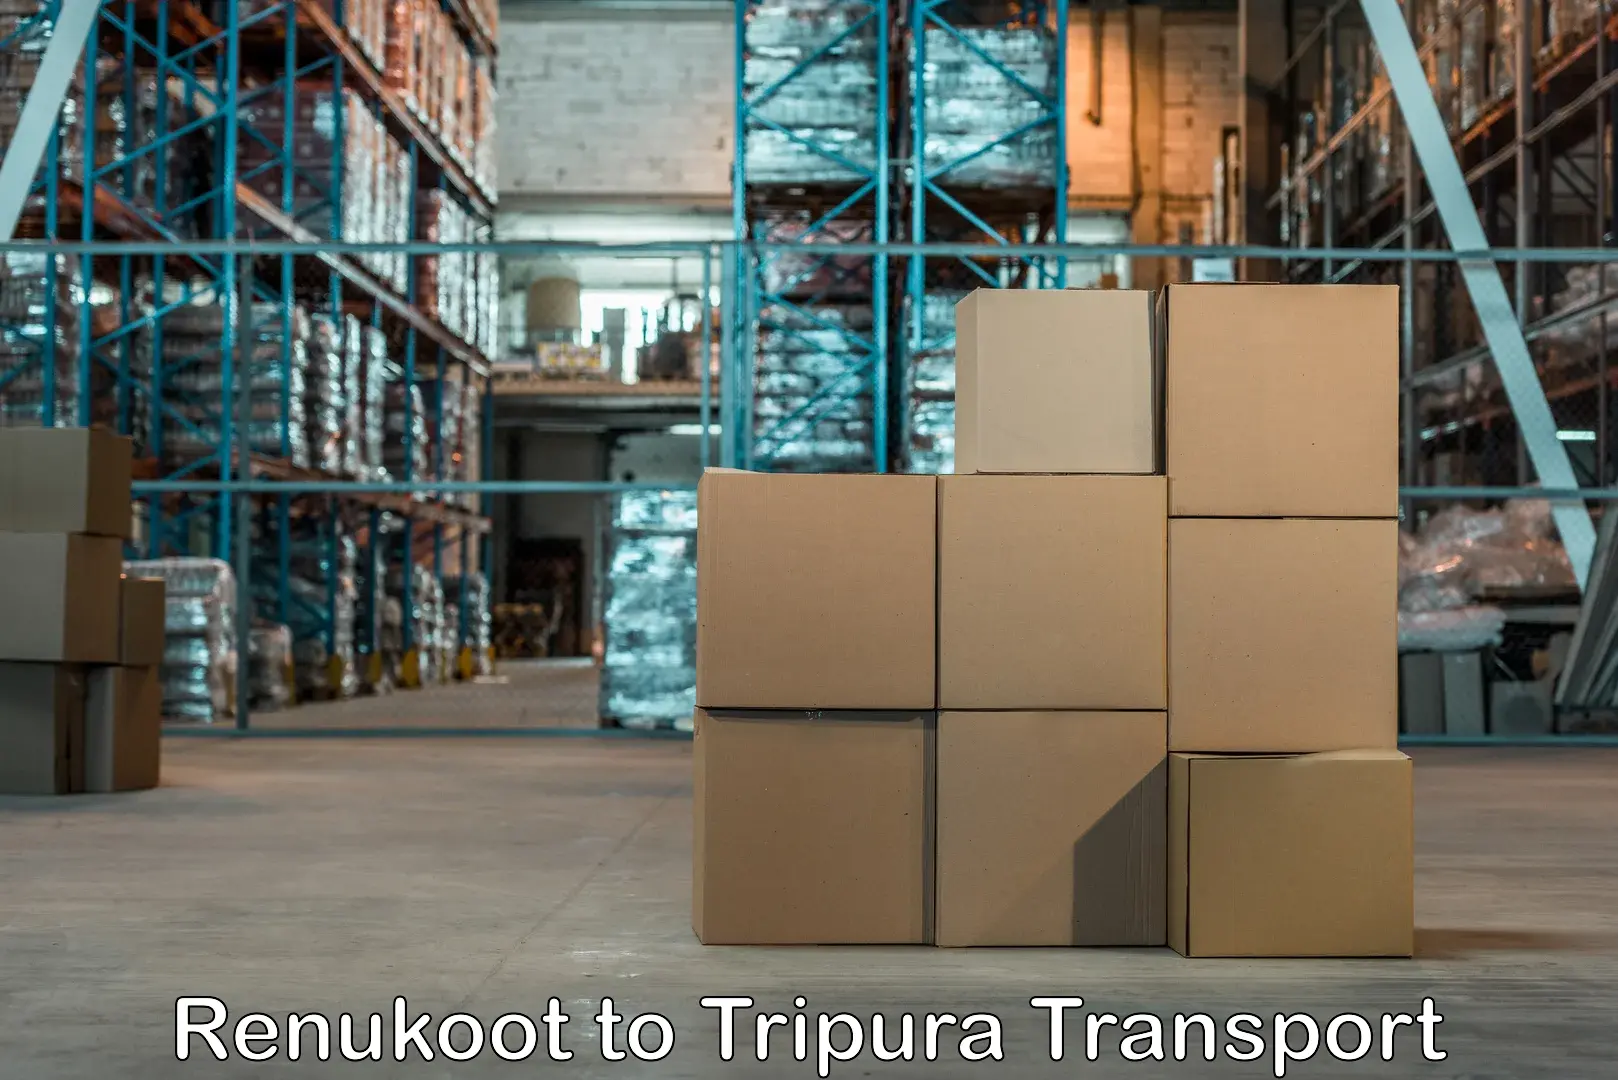 Furniture transport service Renukoot to Aambasa